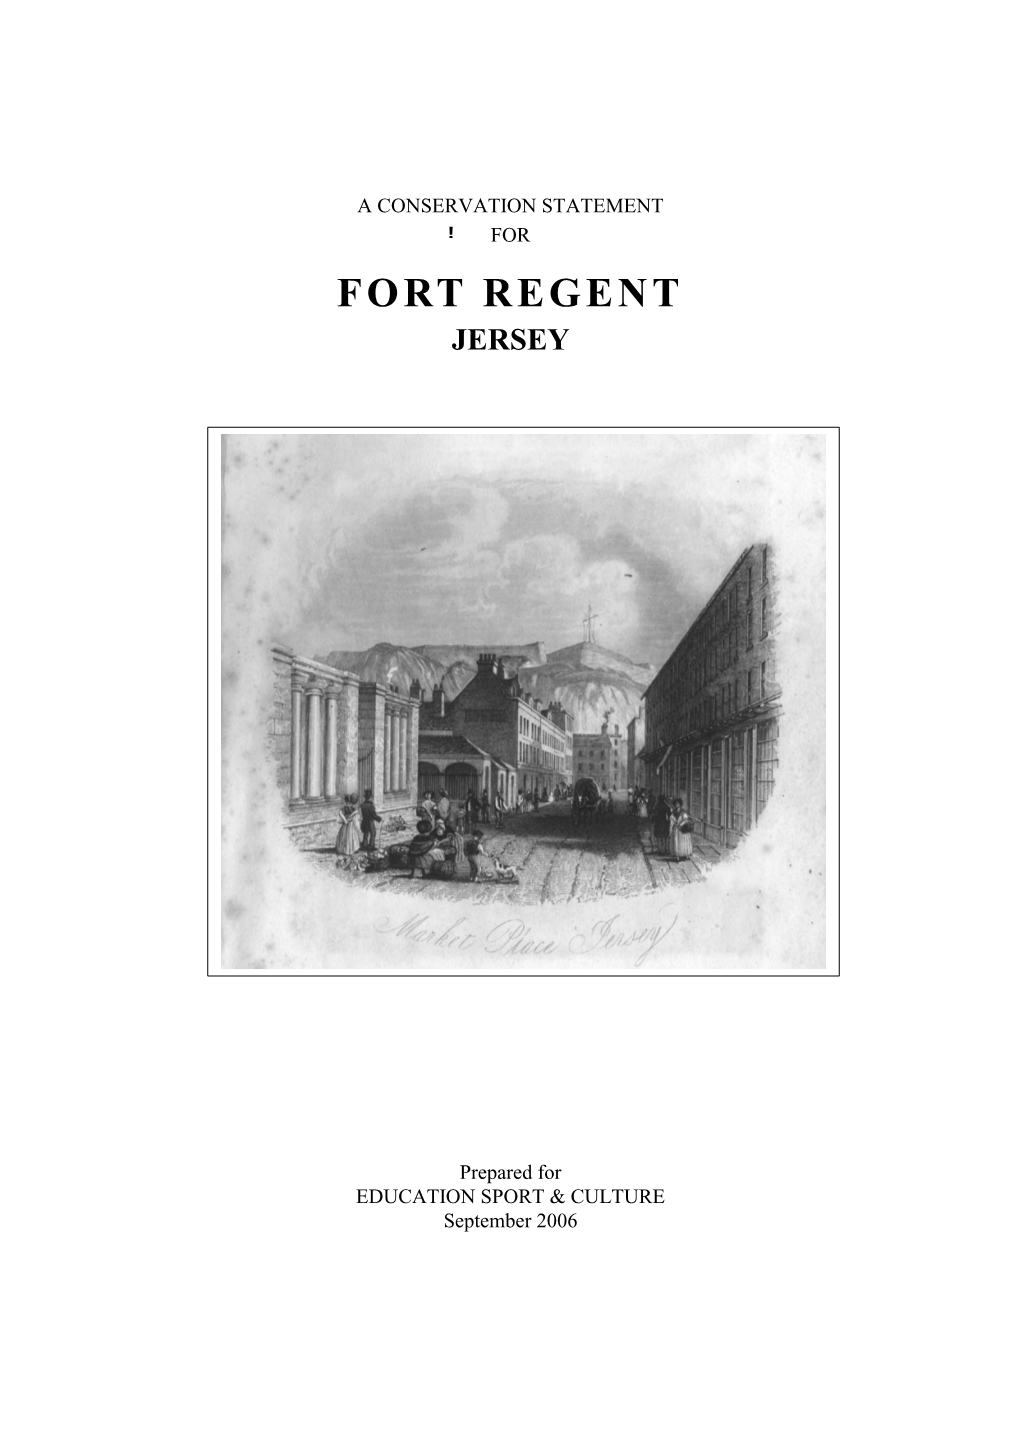 A Conservation Statement for Fort Regent